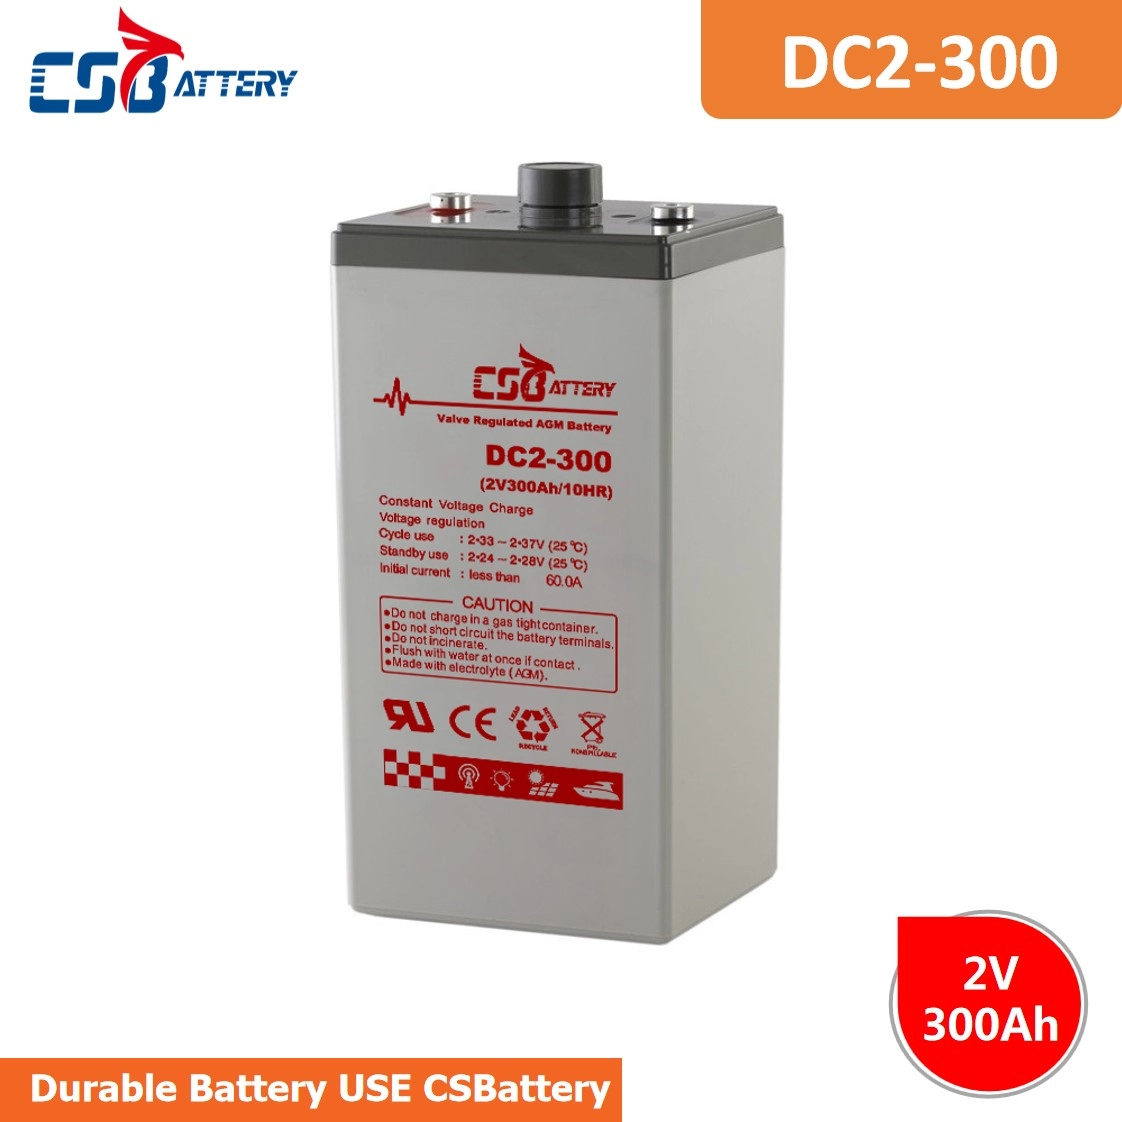 DC2-300 2V 300Ah Deep Cycle AGM Battery